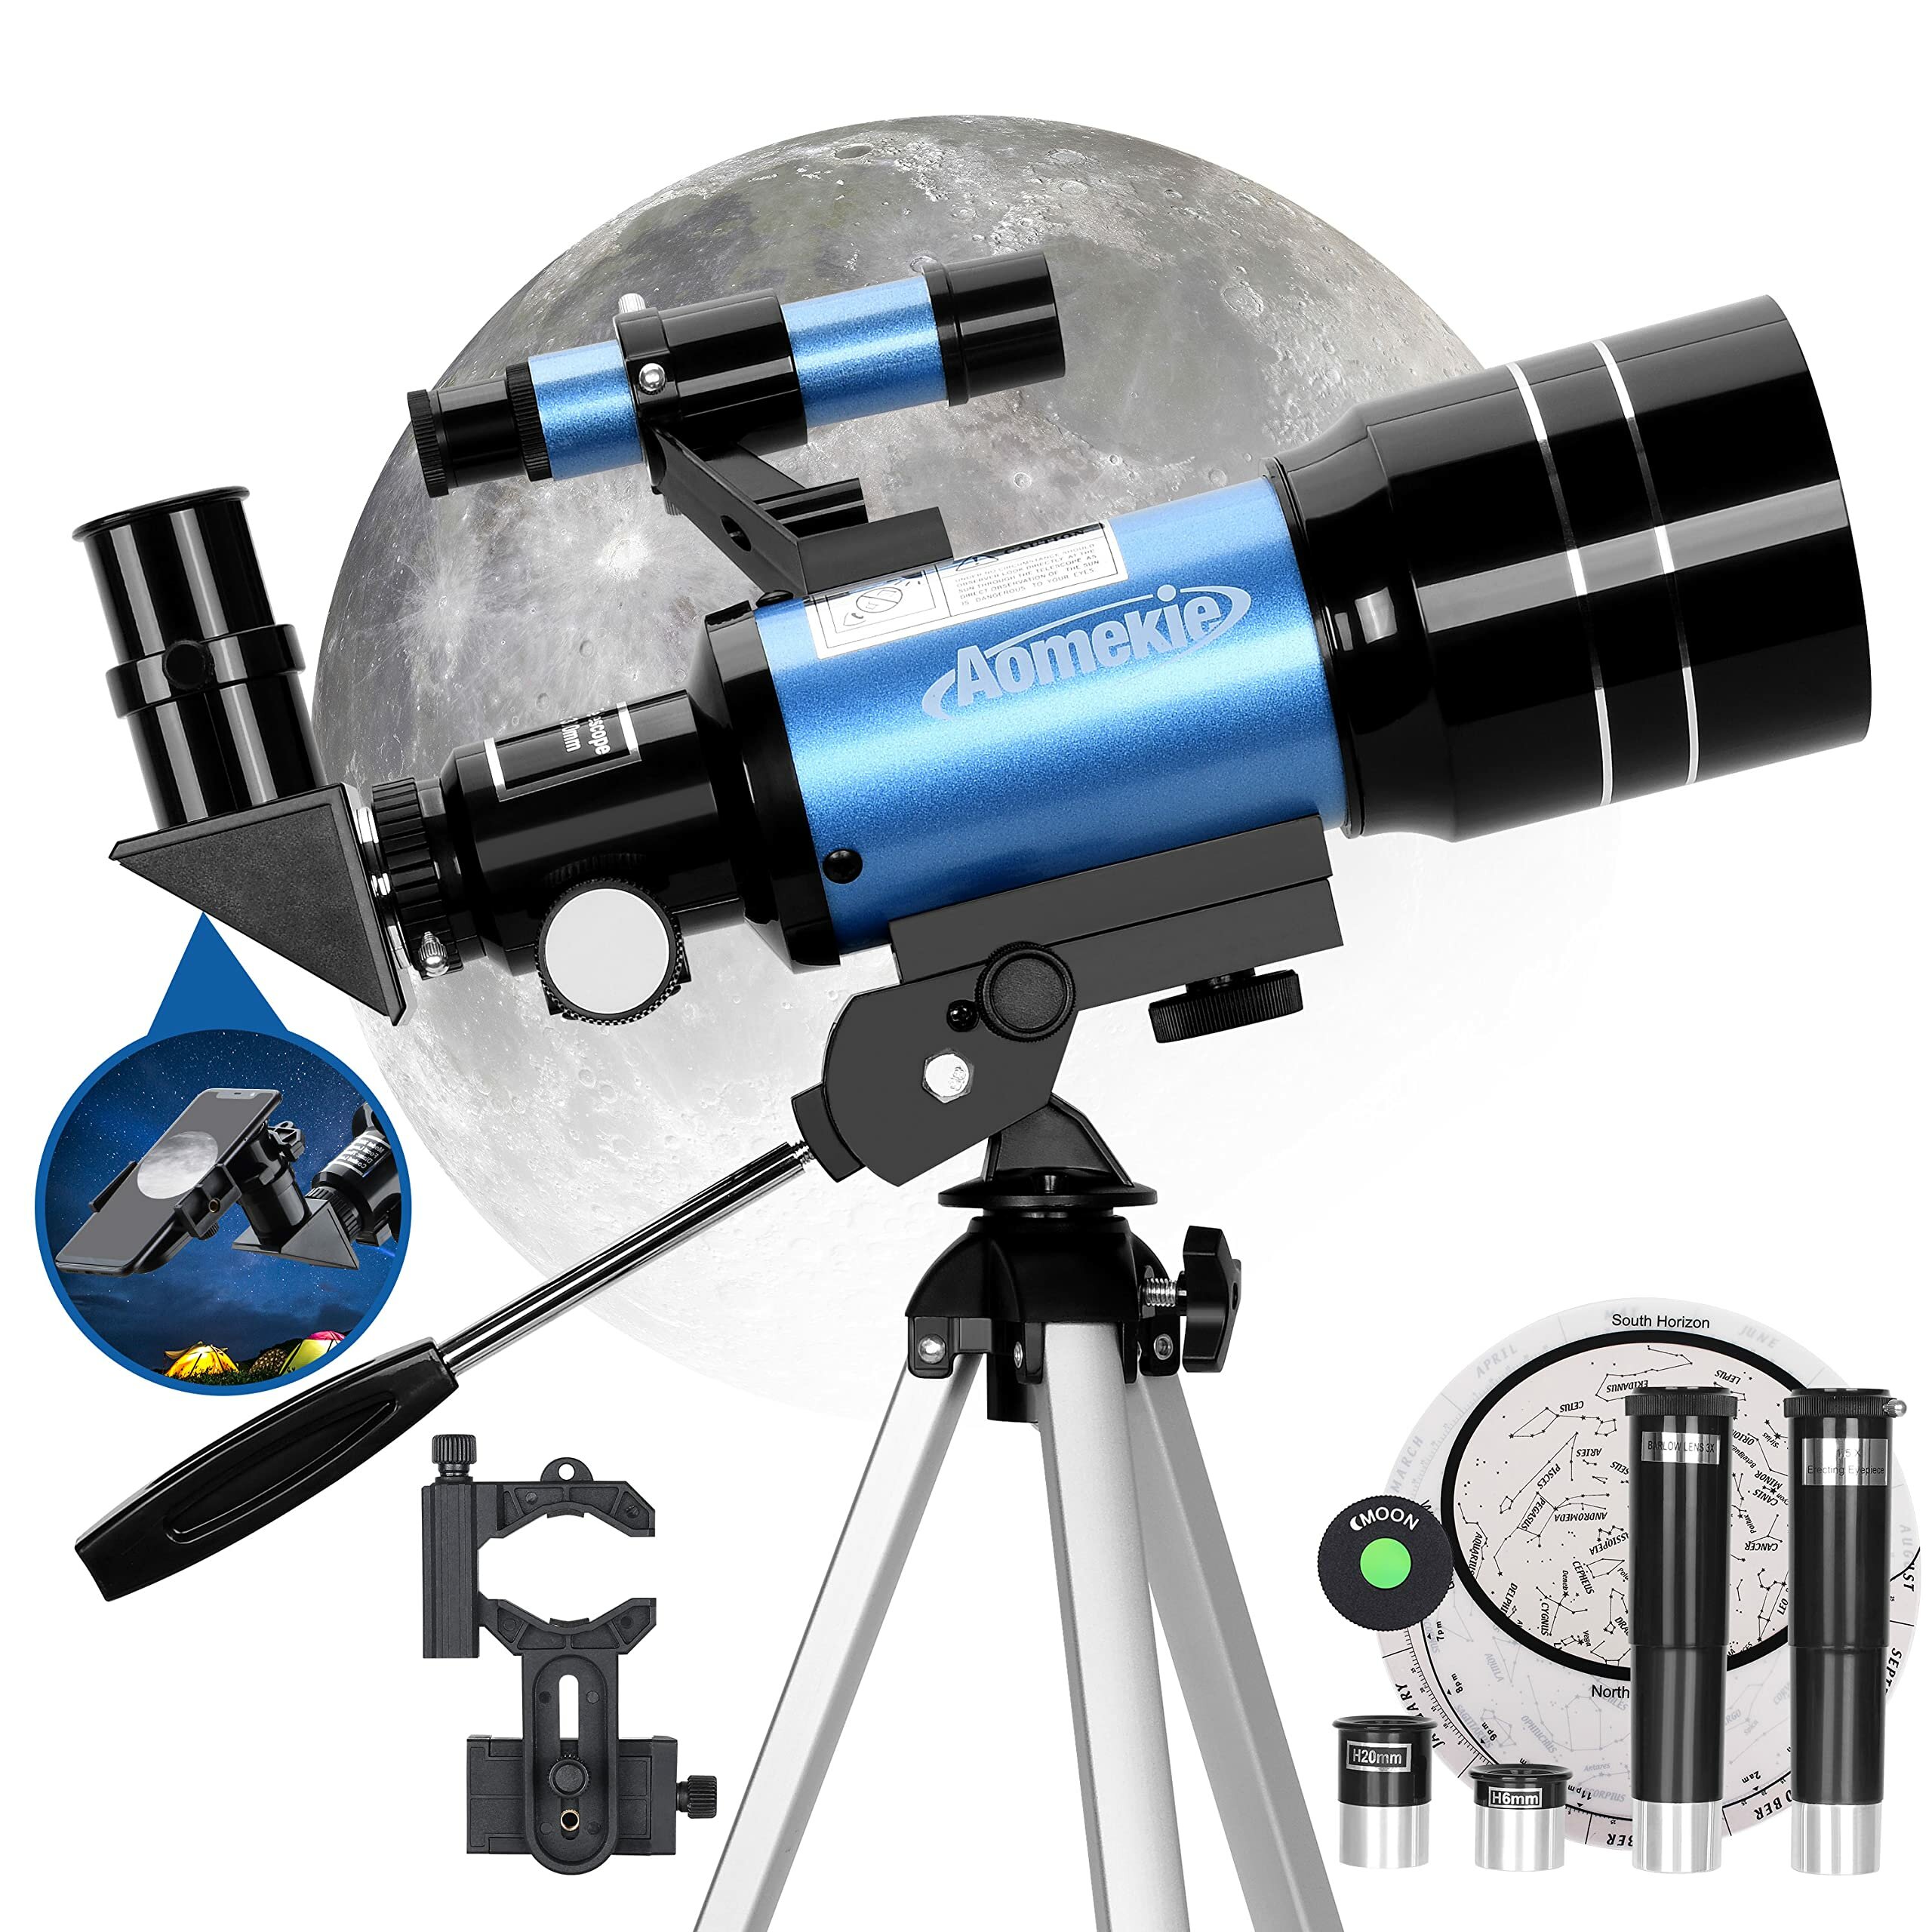 [EU Direct] Telescopio astronómico AOMEKIE AO2001 70mm para niños, 150X Telescopio astronómico potente con adaptador para smartphone, trípode, lente Barlow y buscador para principiantes y aficionados